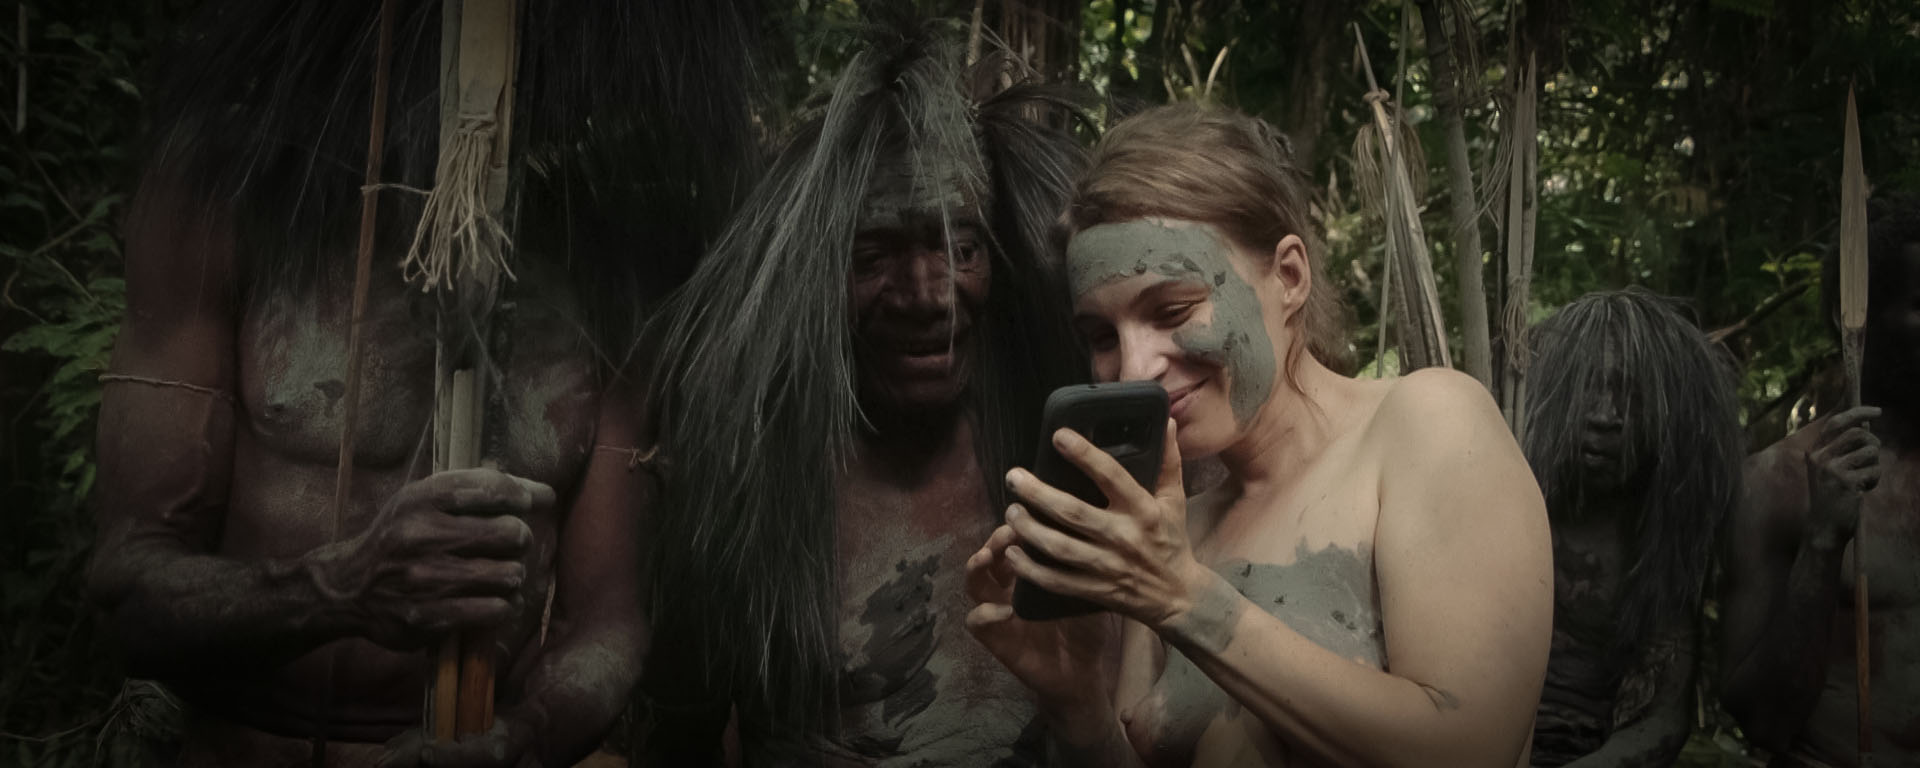 Extremreisen zu nackten Wilden im Dschungel von Papua